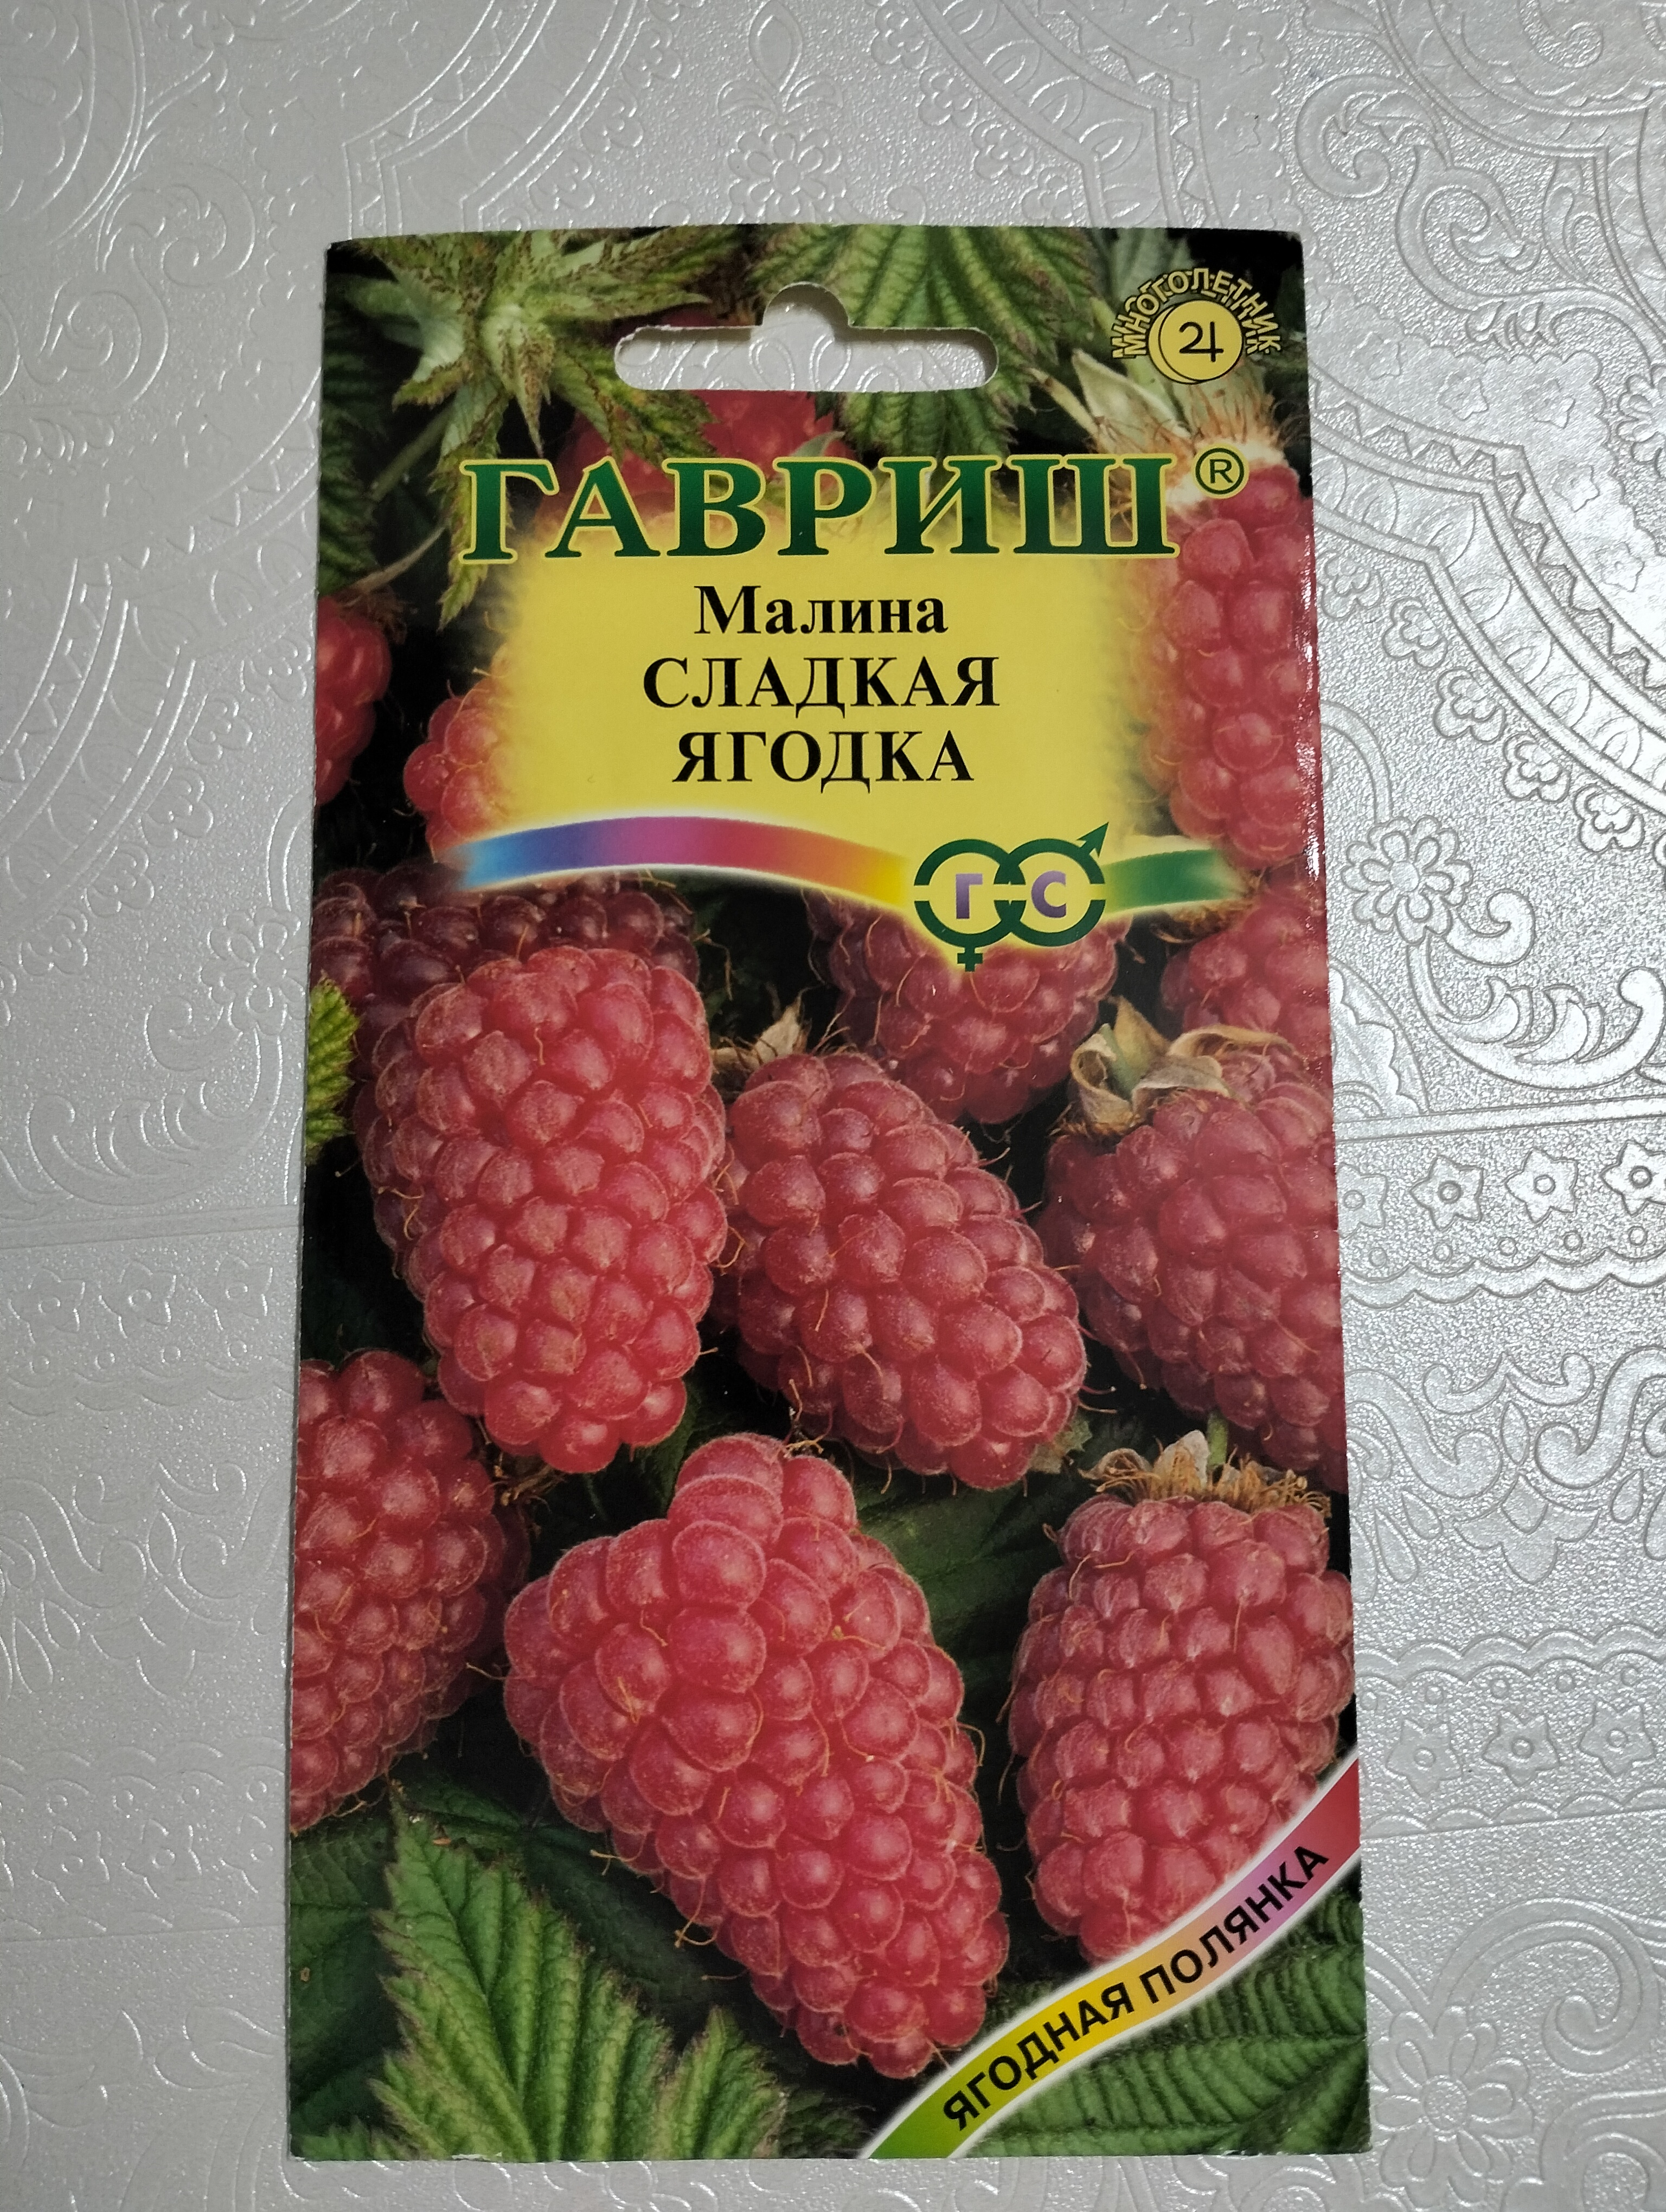 Семена Гавриш Сладкая ягодка малина, - купить в Москве, цены на Мегамаркет